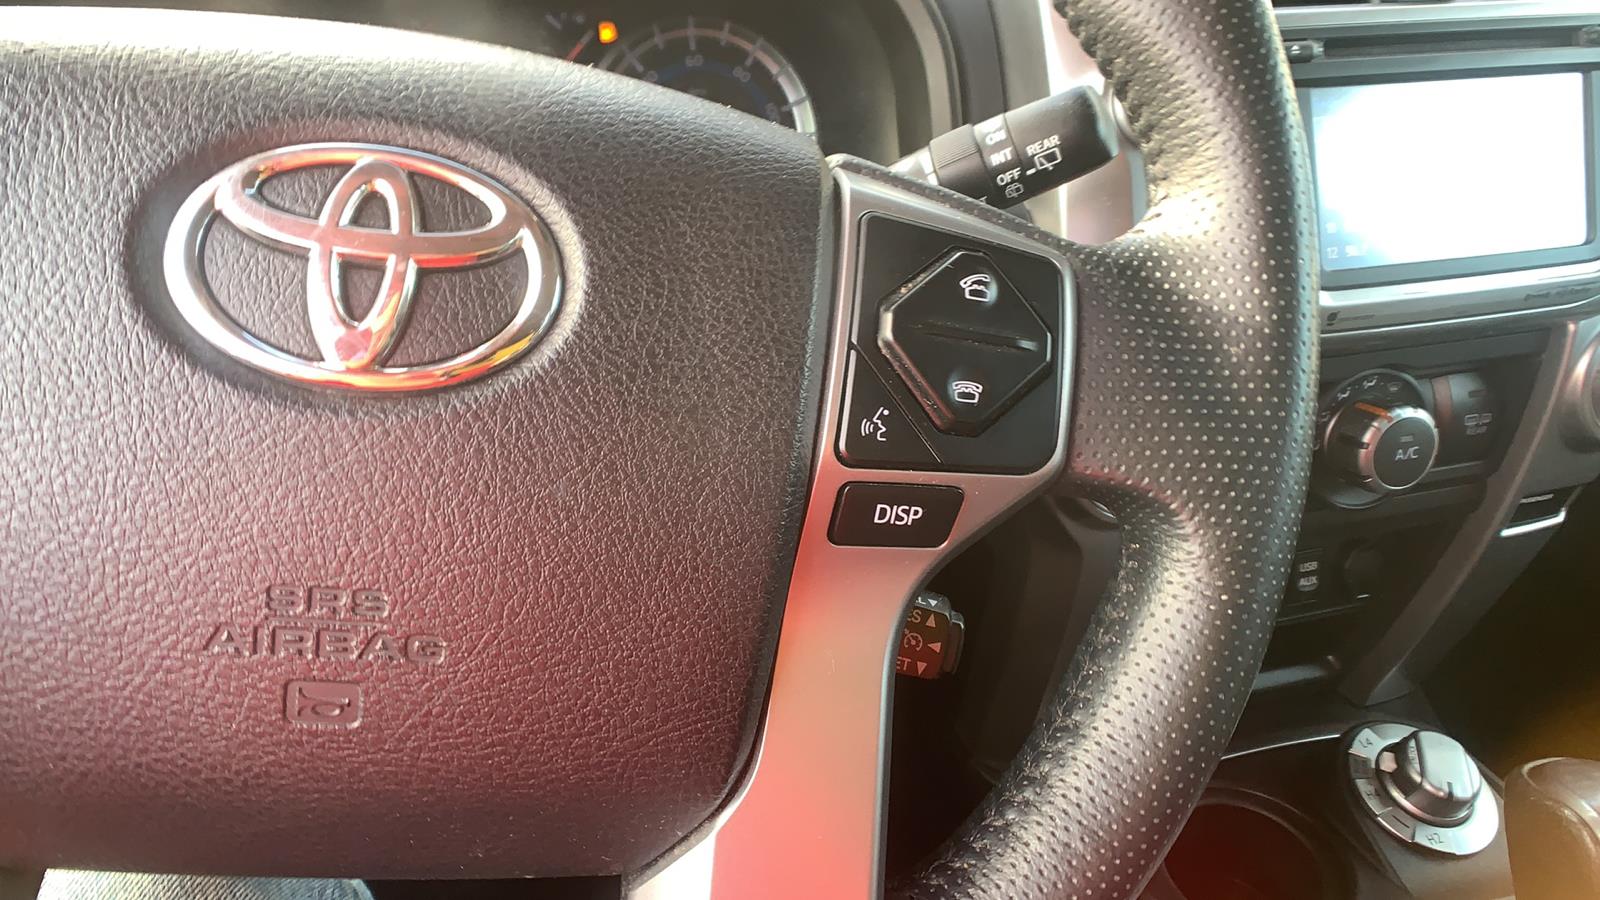 2017 Toyota 4Runner Sport Utility